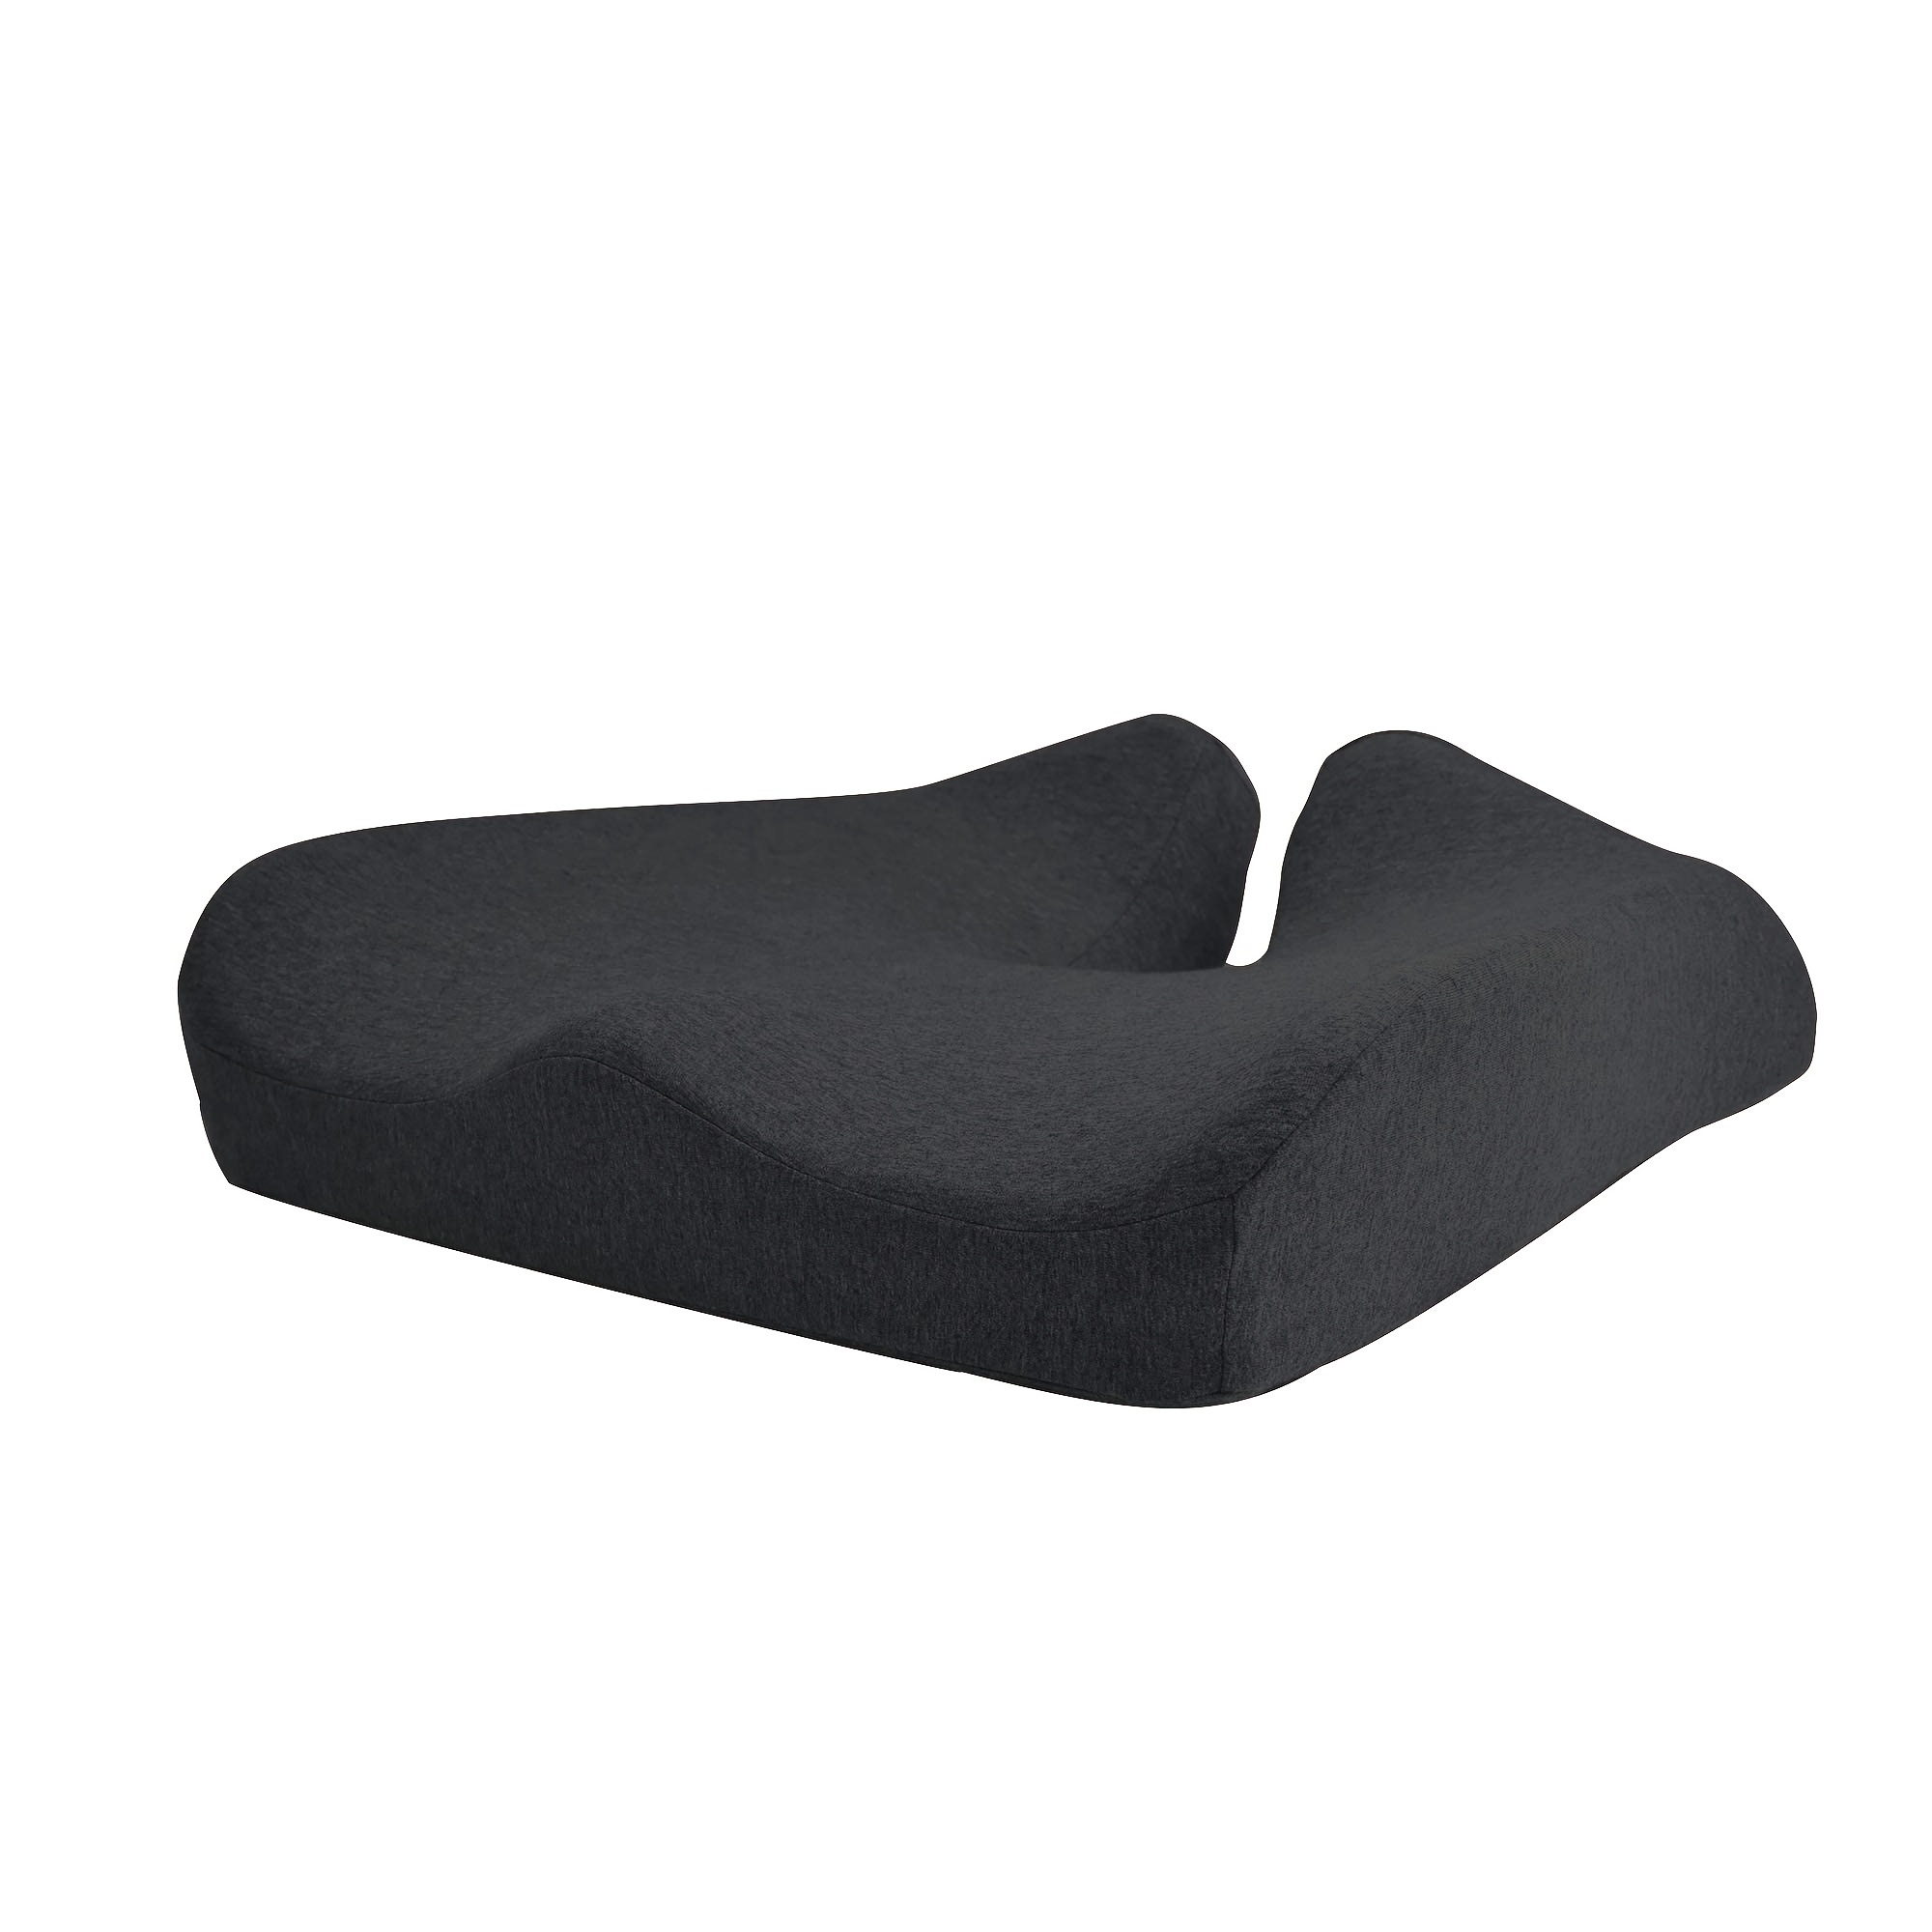 Cushion Lab Pressure Relief Seat Cushion - Black